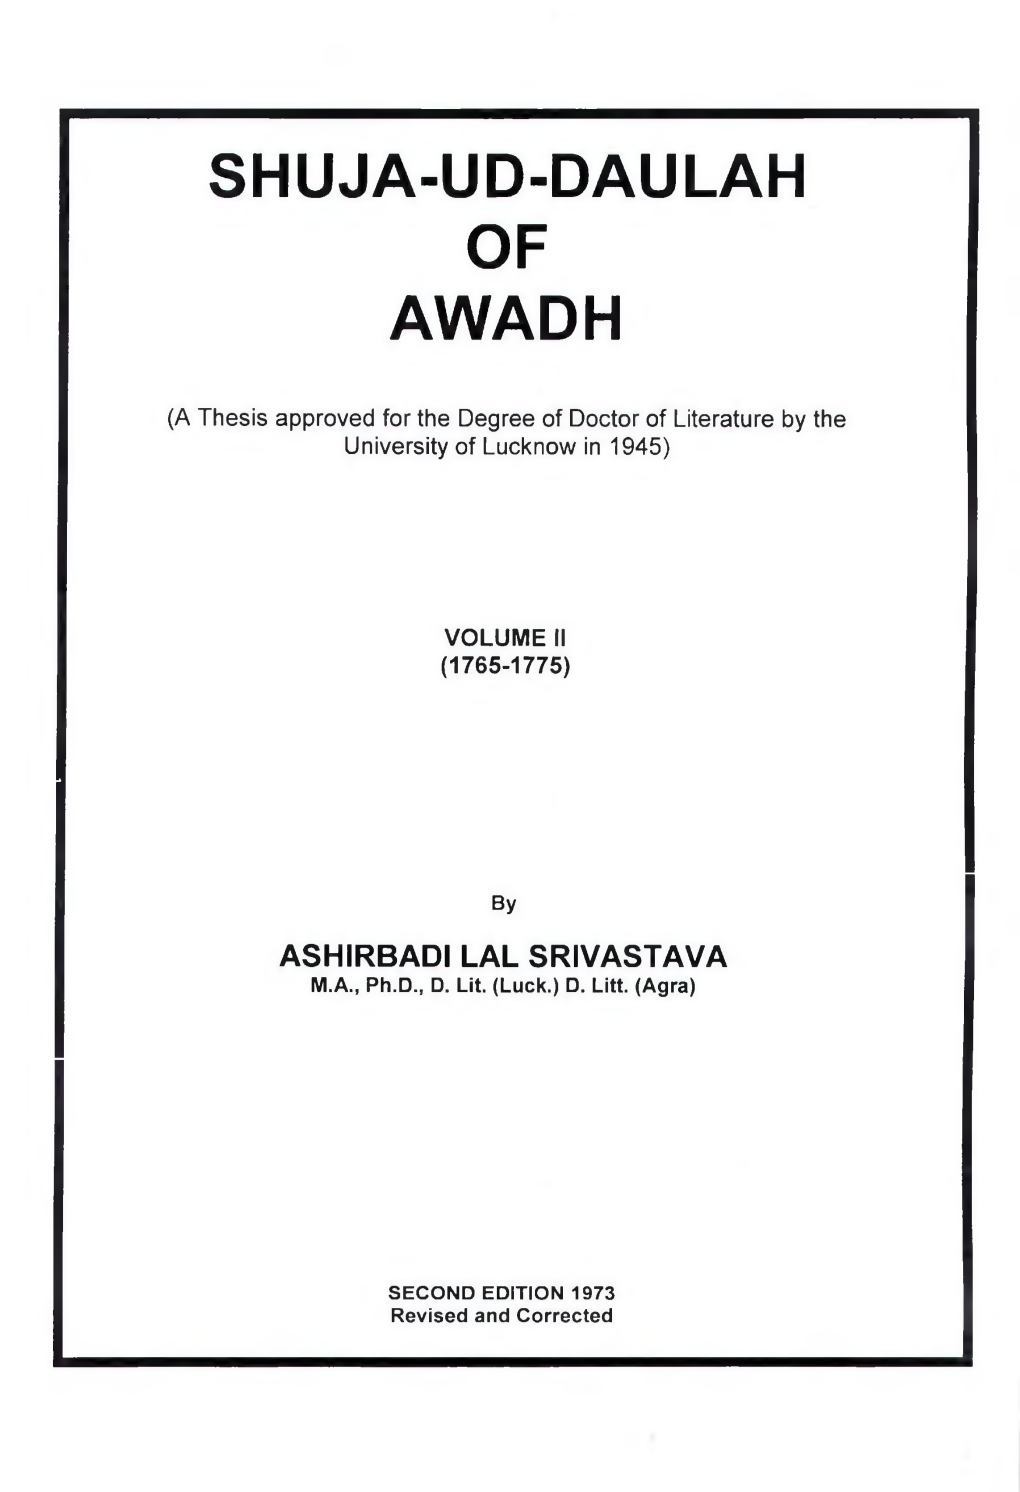 Shuja-Ud-Daulah of Awadh